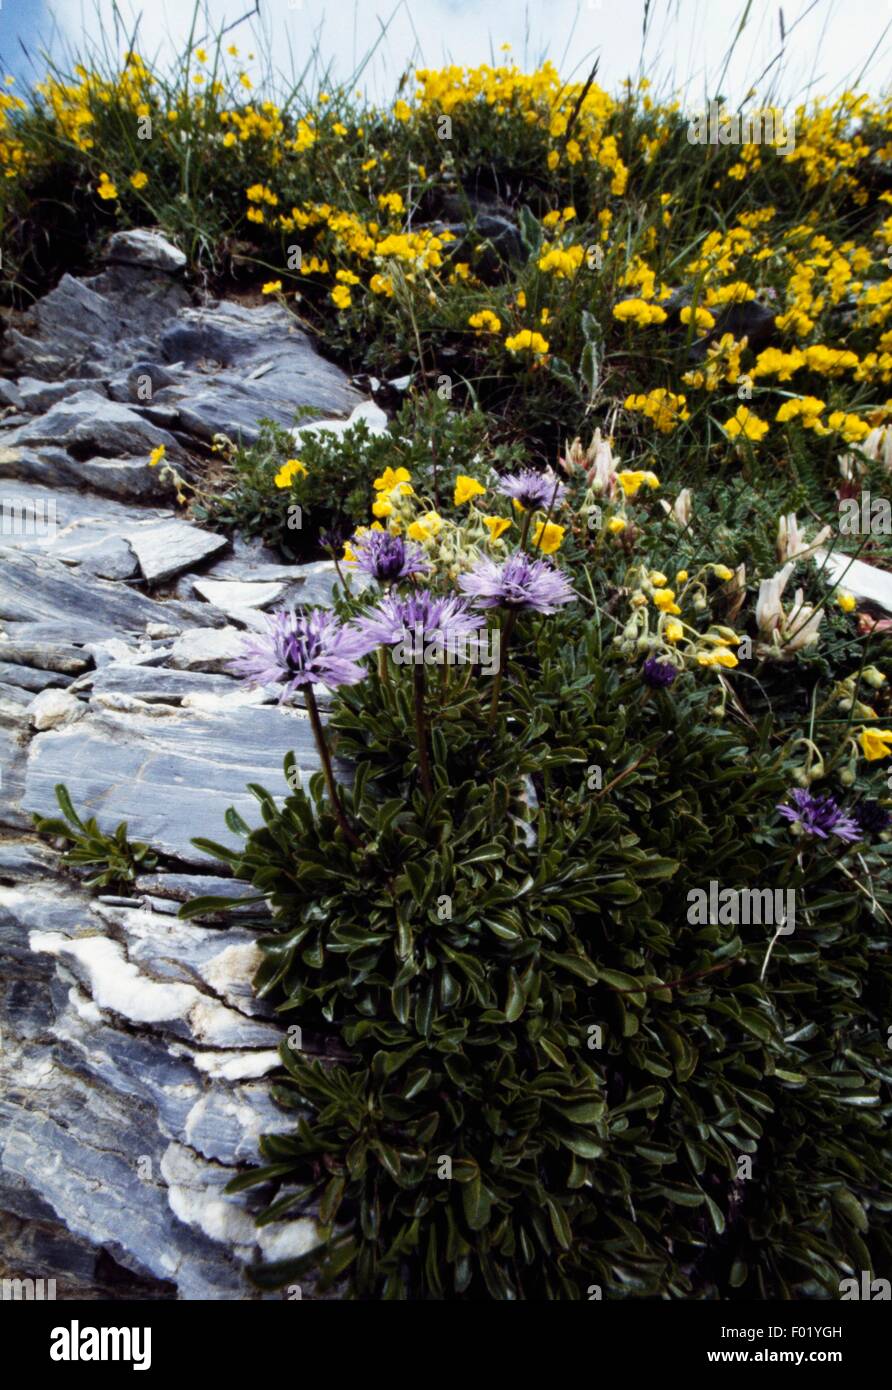 Matted globularia (Globularia repens), Vallee des Merveilles, Mercantour National Park (Parc national du Mercantour), Provence-Alpes-Cote d'Azur, France. Stock Photo